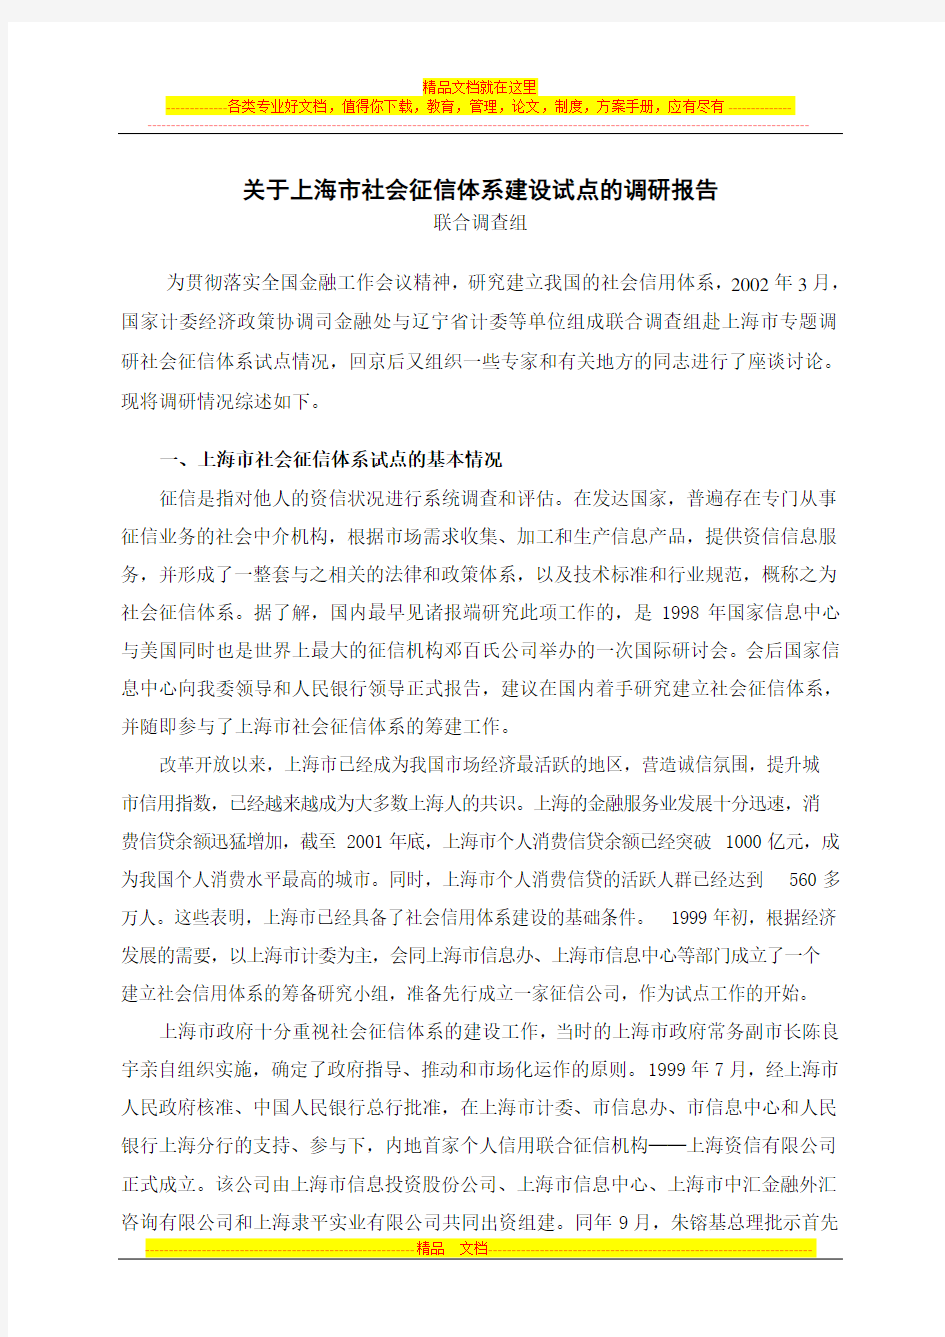 关于上海市社会征信体系建设试点的调研报告